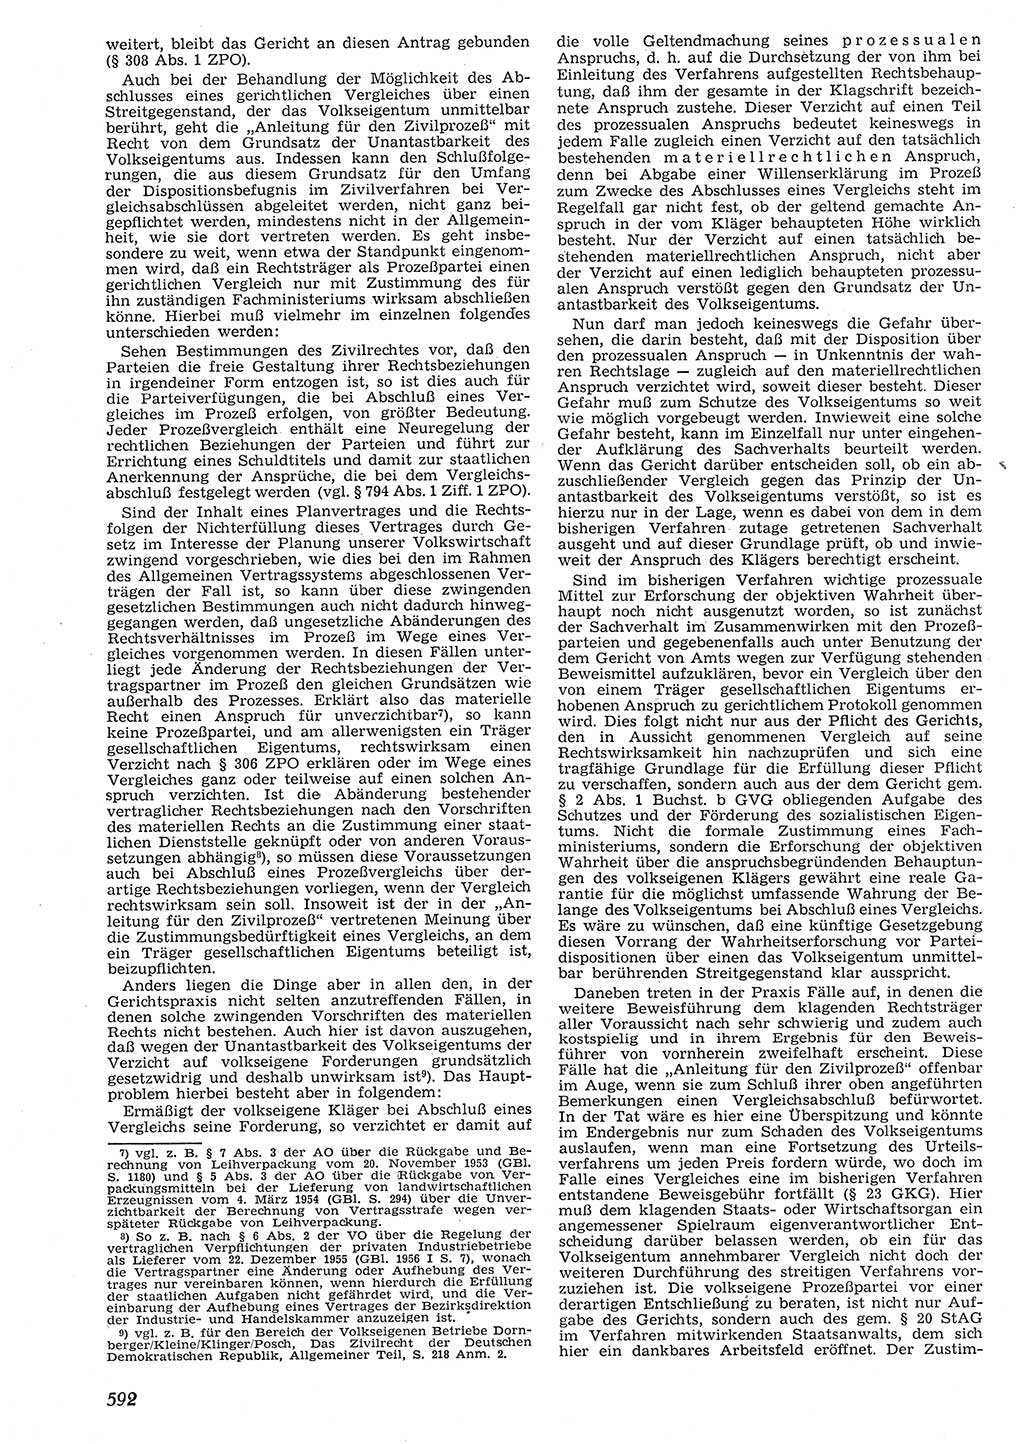 Neue Justiz (NJ), Zeitschrift für Recht und Rechtswissenschaft [Deutsche Demokratische Republik (DDR)], 10. Jahrgang 1956, Seite 592 (NJ DDR 1956, S. 592)